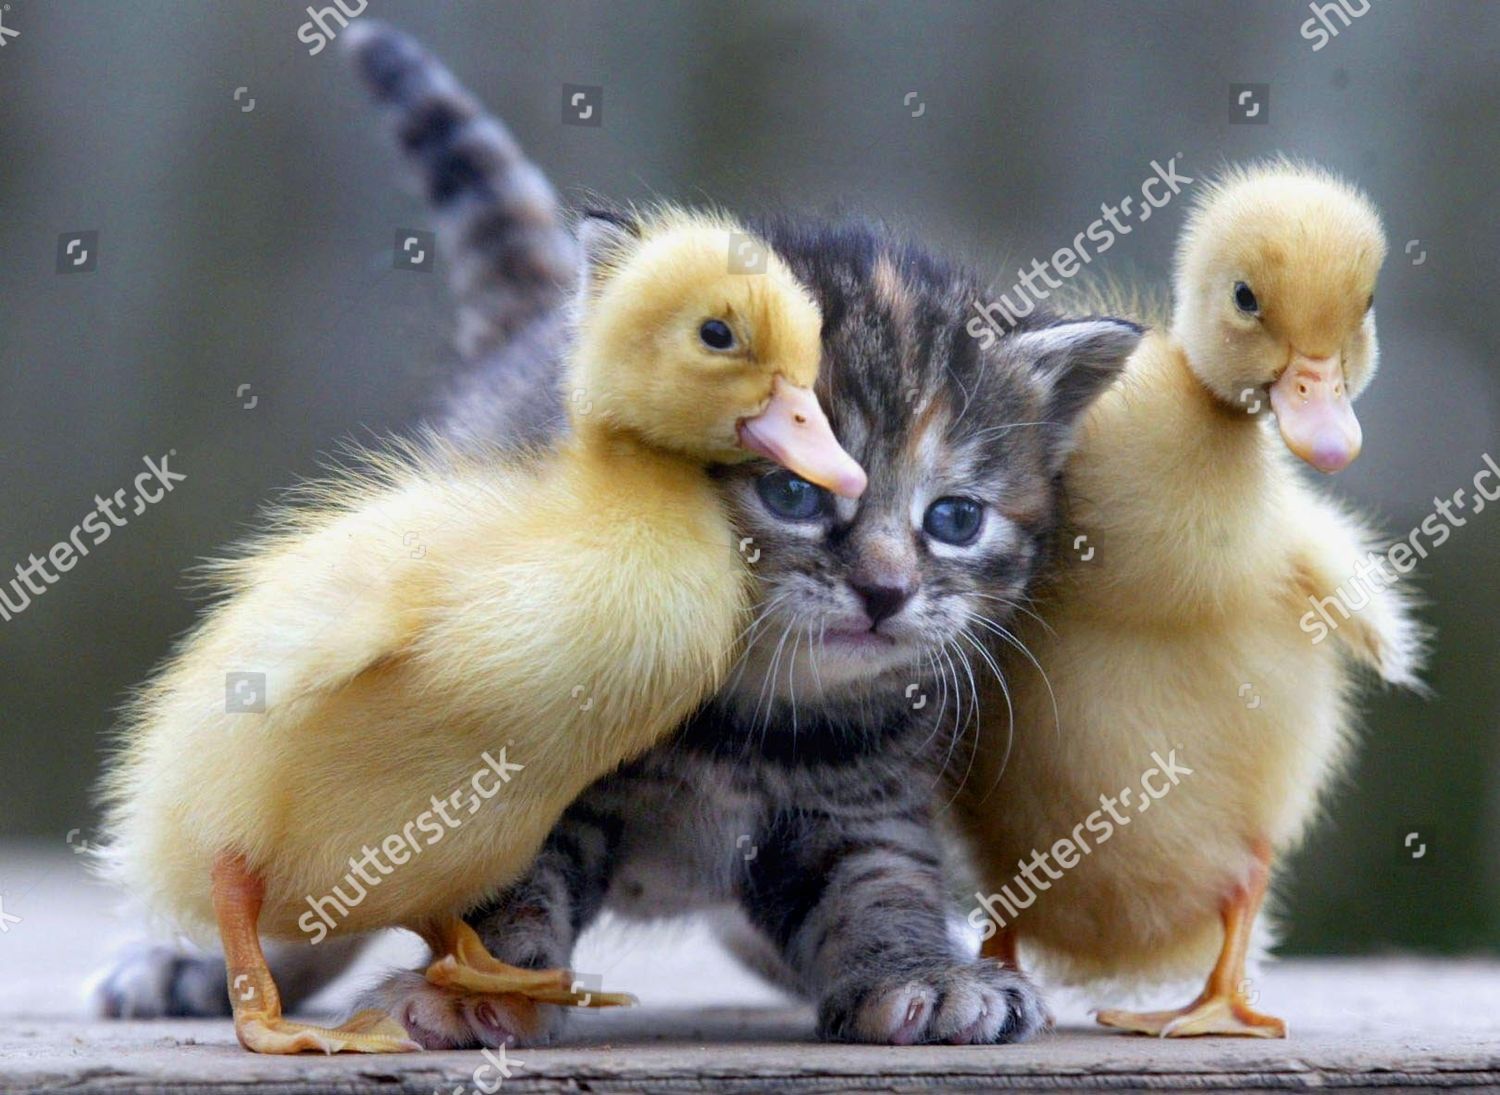 baby ducks and kittens